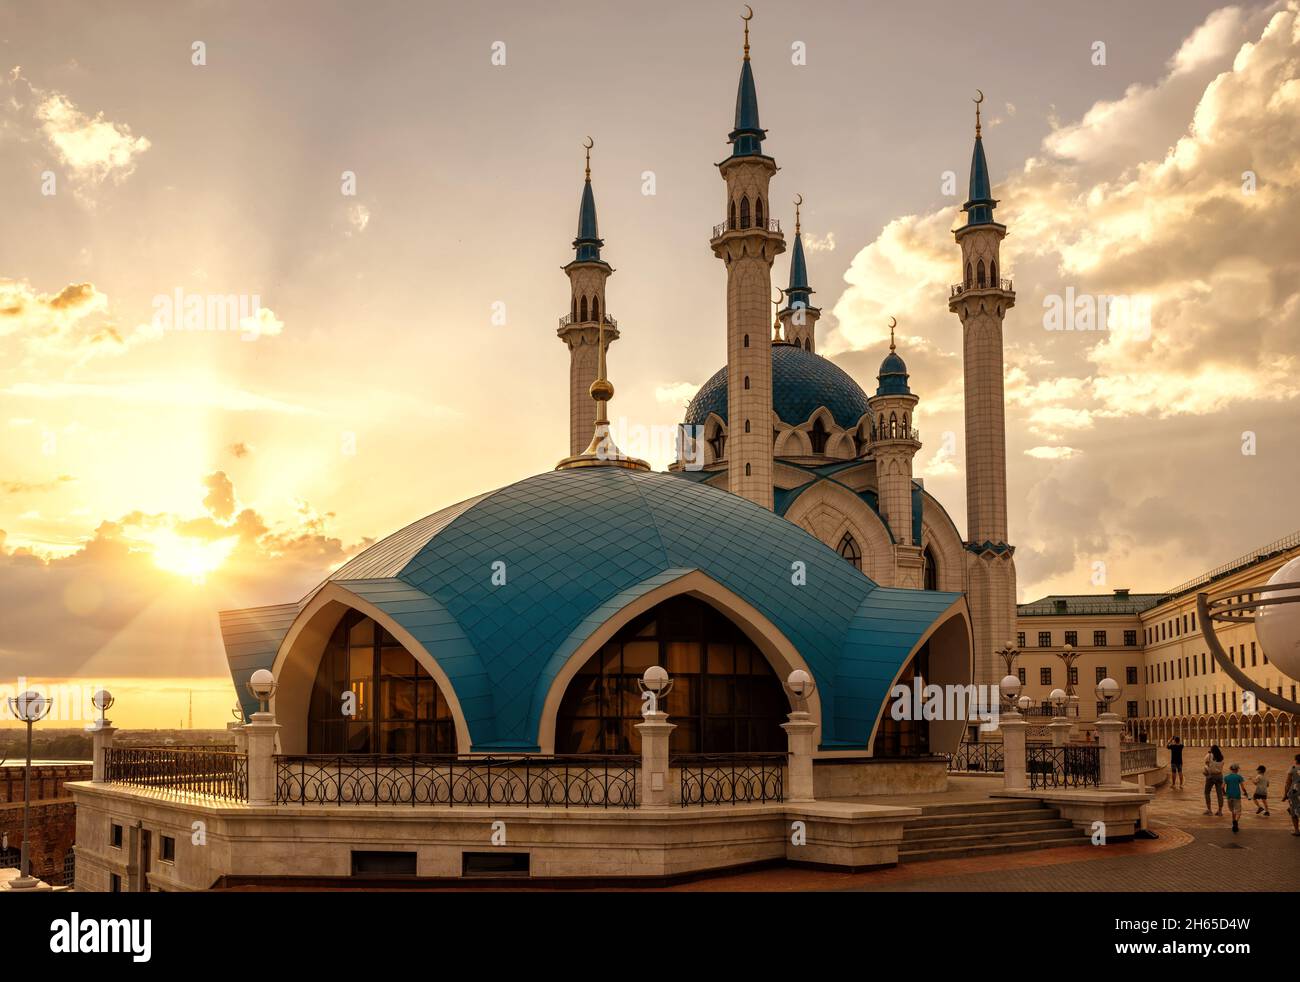 Moschea di Kul Sharif nel Cremlino Kazan al tramonto, Tatarstan, Russia. E' un punto di riferimento di Kazan. Vista soleggiata dell'architettura islamica, attrazione turistica a Ka Foto Stock